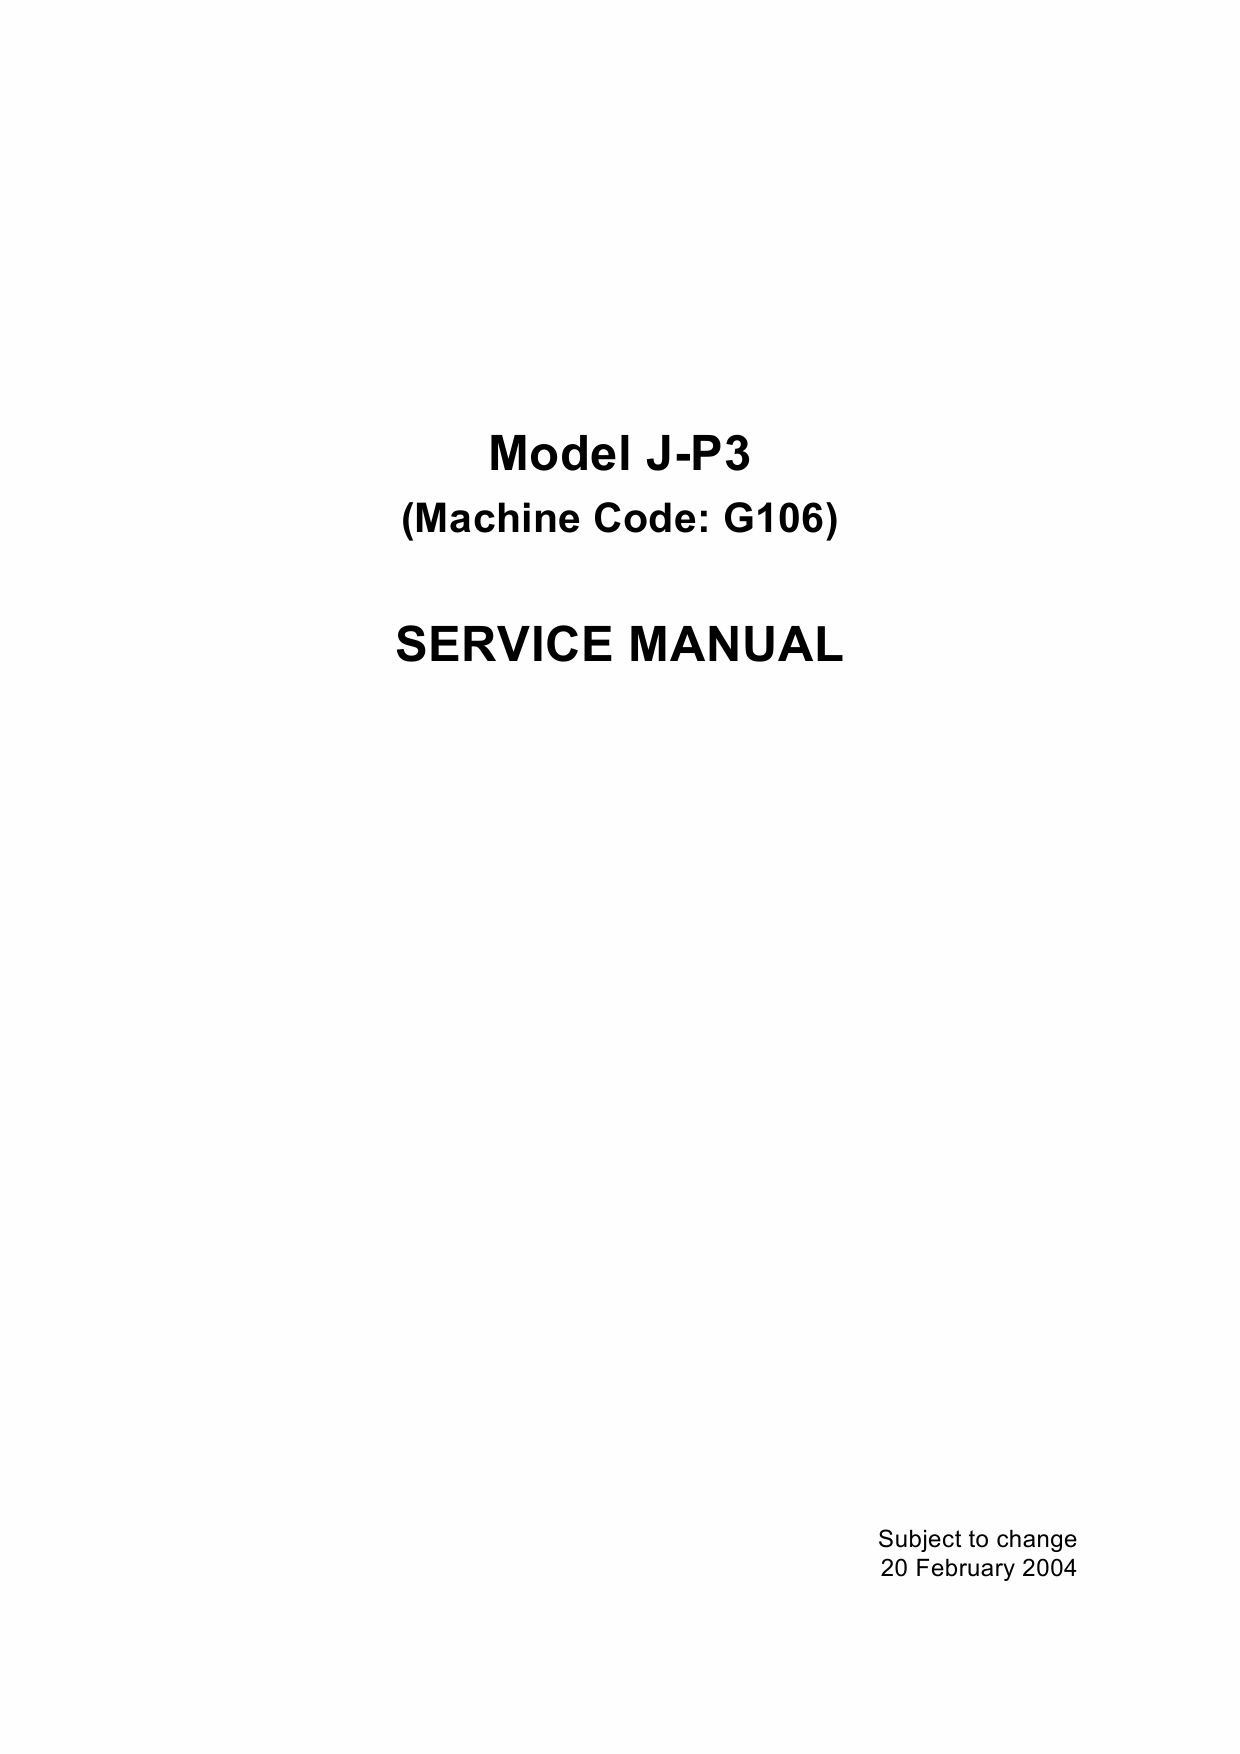 RICOH Aficio CL-7100 G106 Parts Service Manual-1